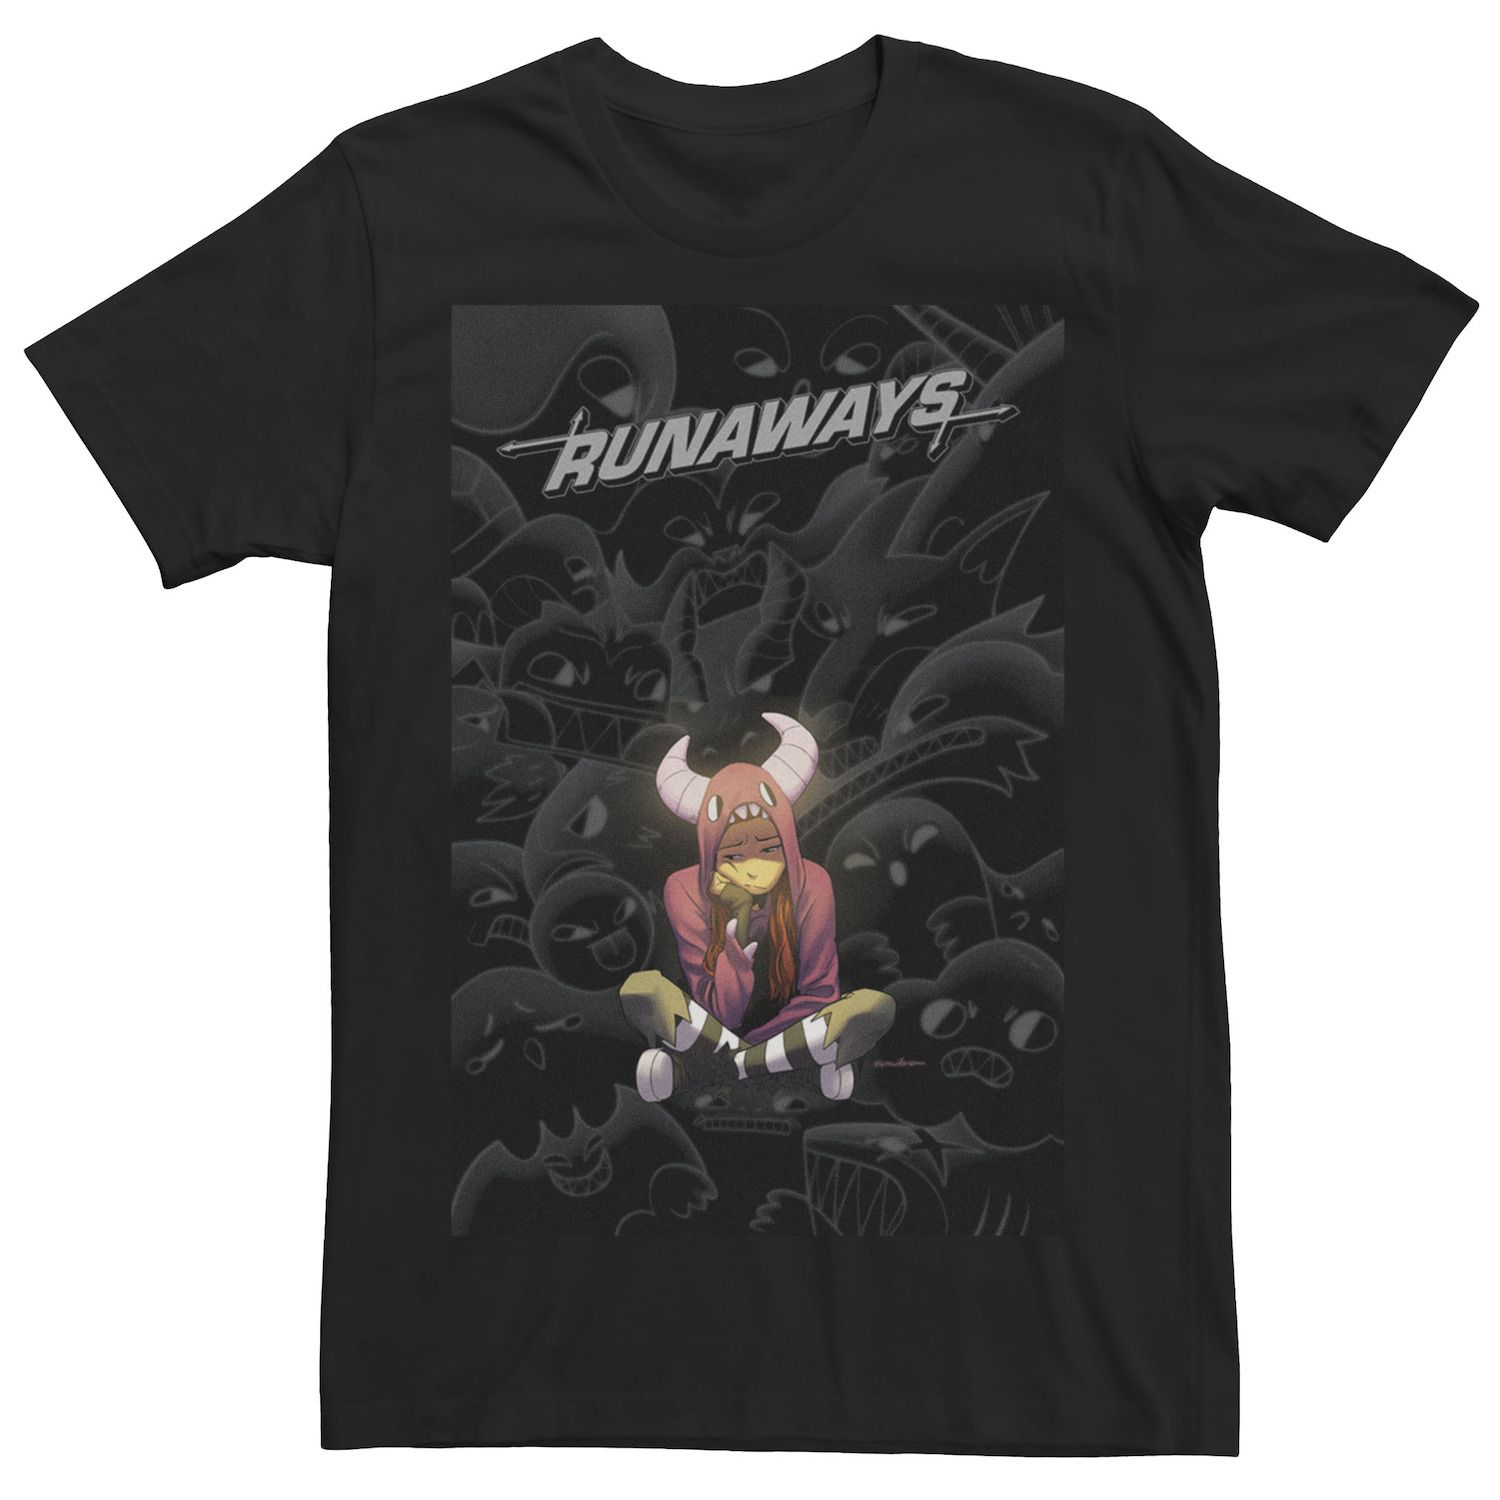 Мужская футболка с обложкой комиксов Comixology Runaways и графическим рисунком Marvel мужская худи с графическим плакатом runaways group marvel